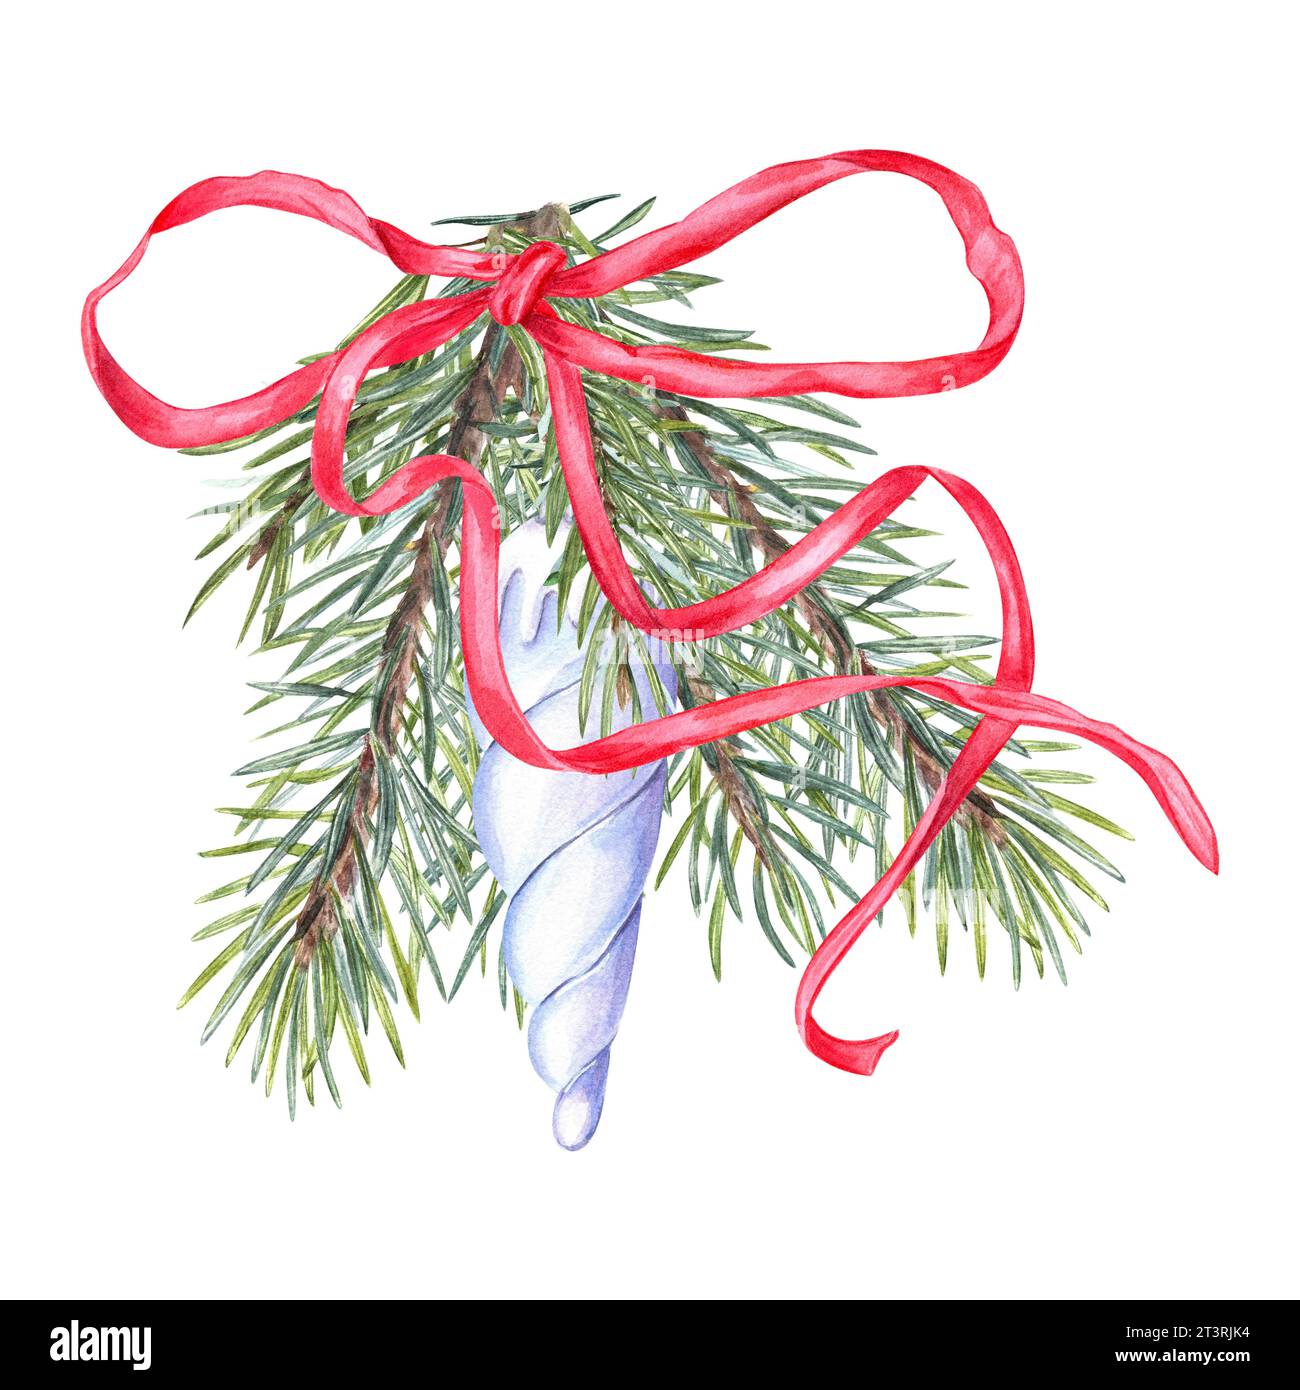 Jouet bleu glace de Noël, branche d'arbre de Noël. Bouquet d'hiver décoré ruban rouge. Épinette verte fraîche. Elément de conception. Illustration à l'aquarelle Banque D'Images